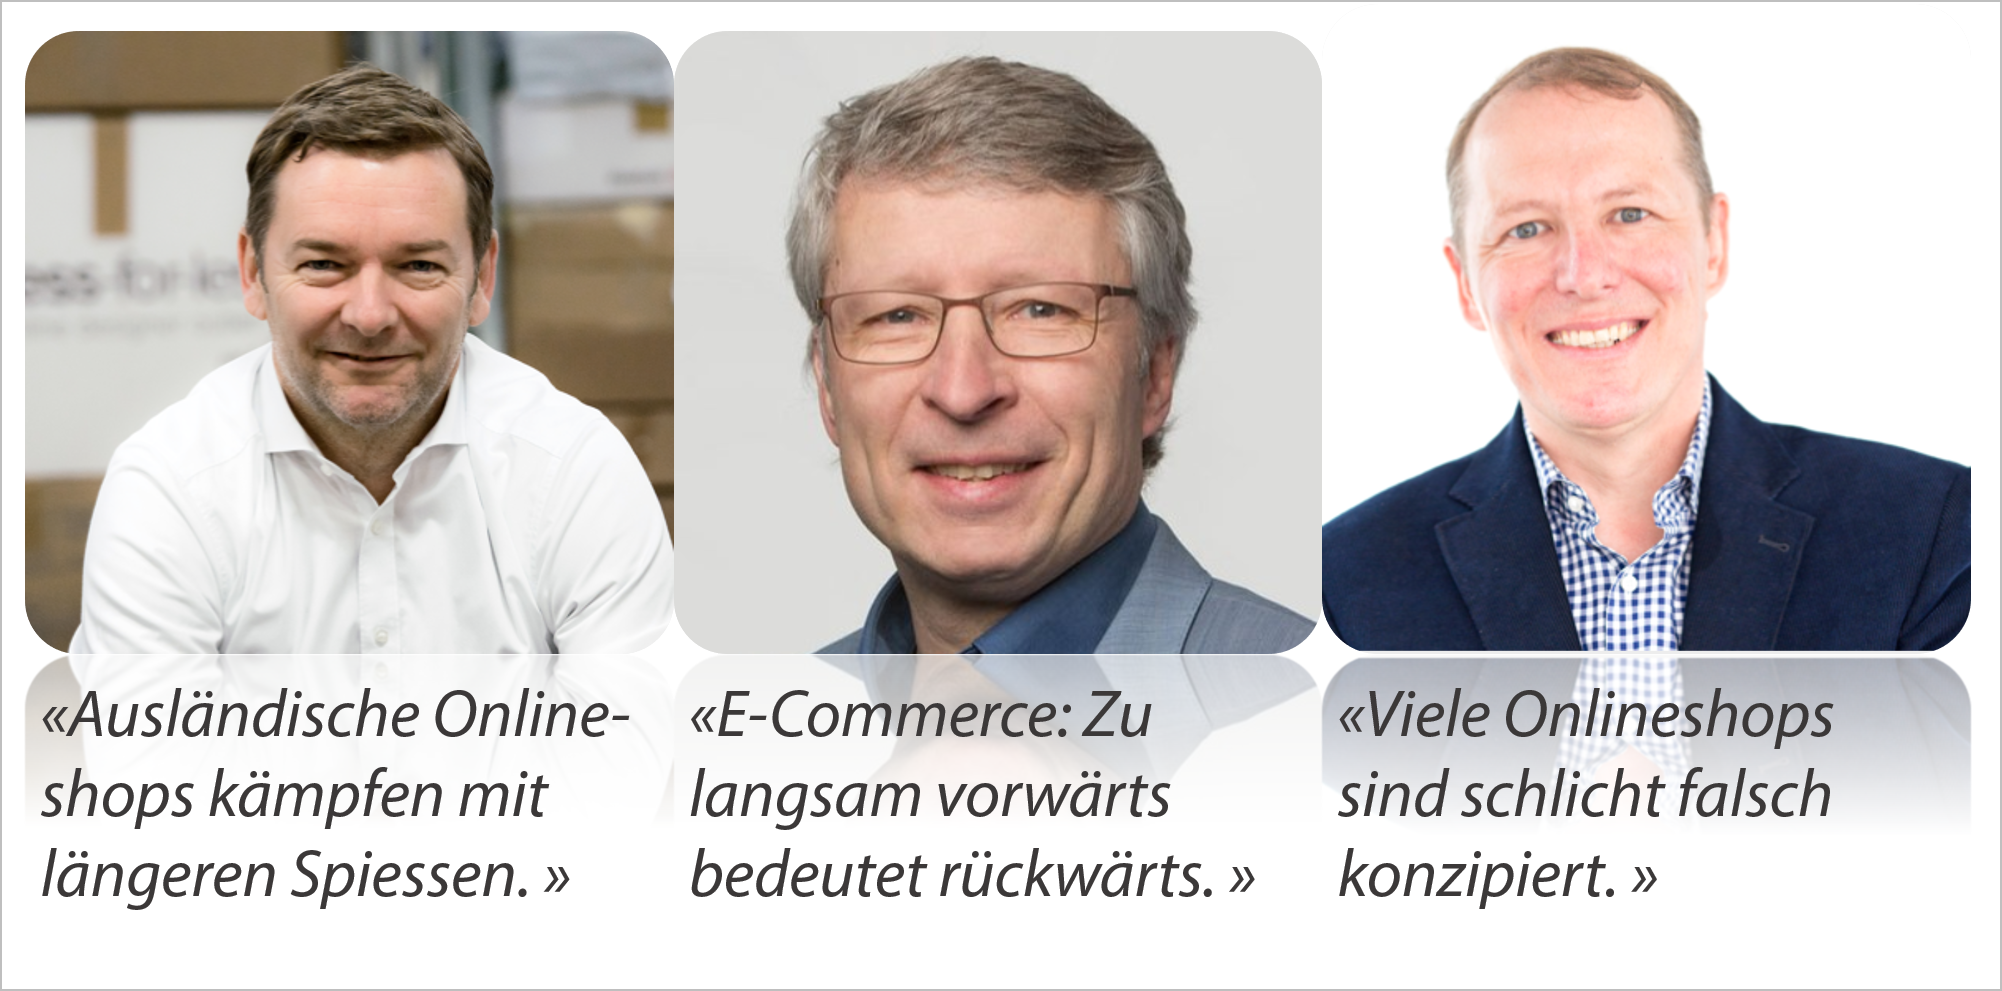 Brennpunkt E-Commerce Schweiz der Netzwoche mit Patrick Kessler, Ralf Wölfle und Thomas Lang